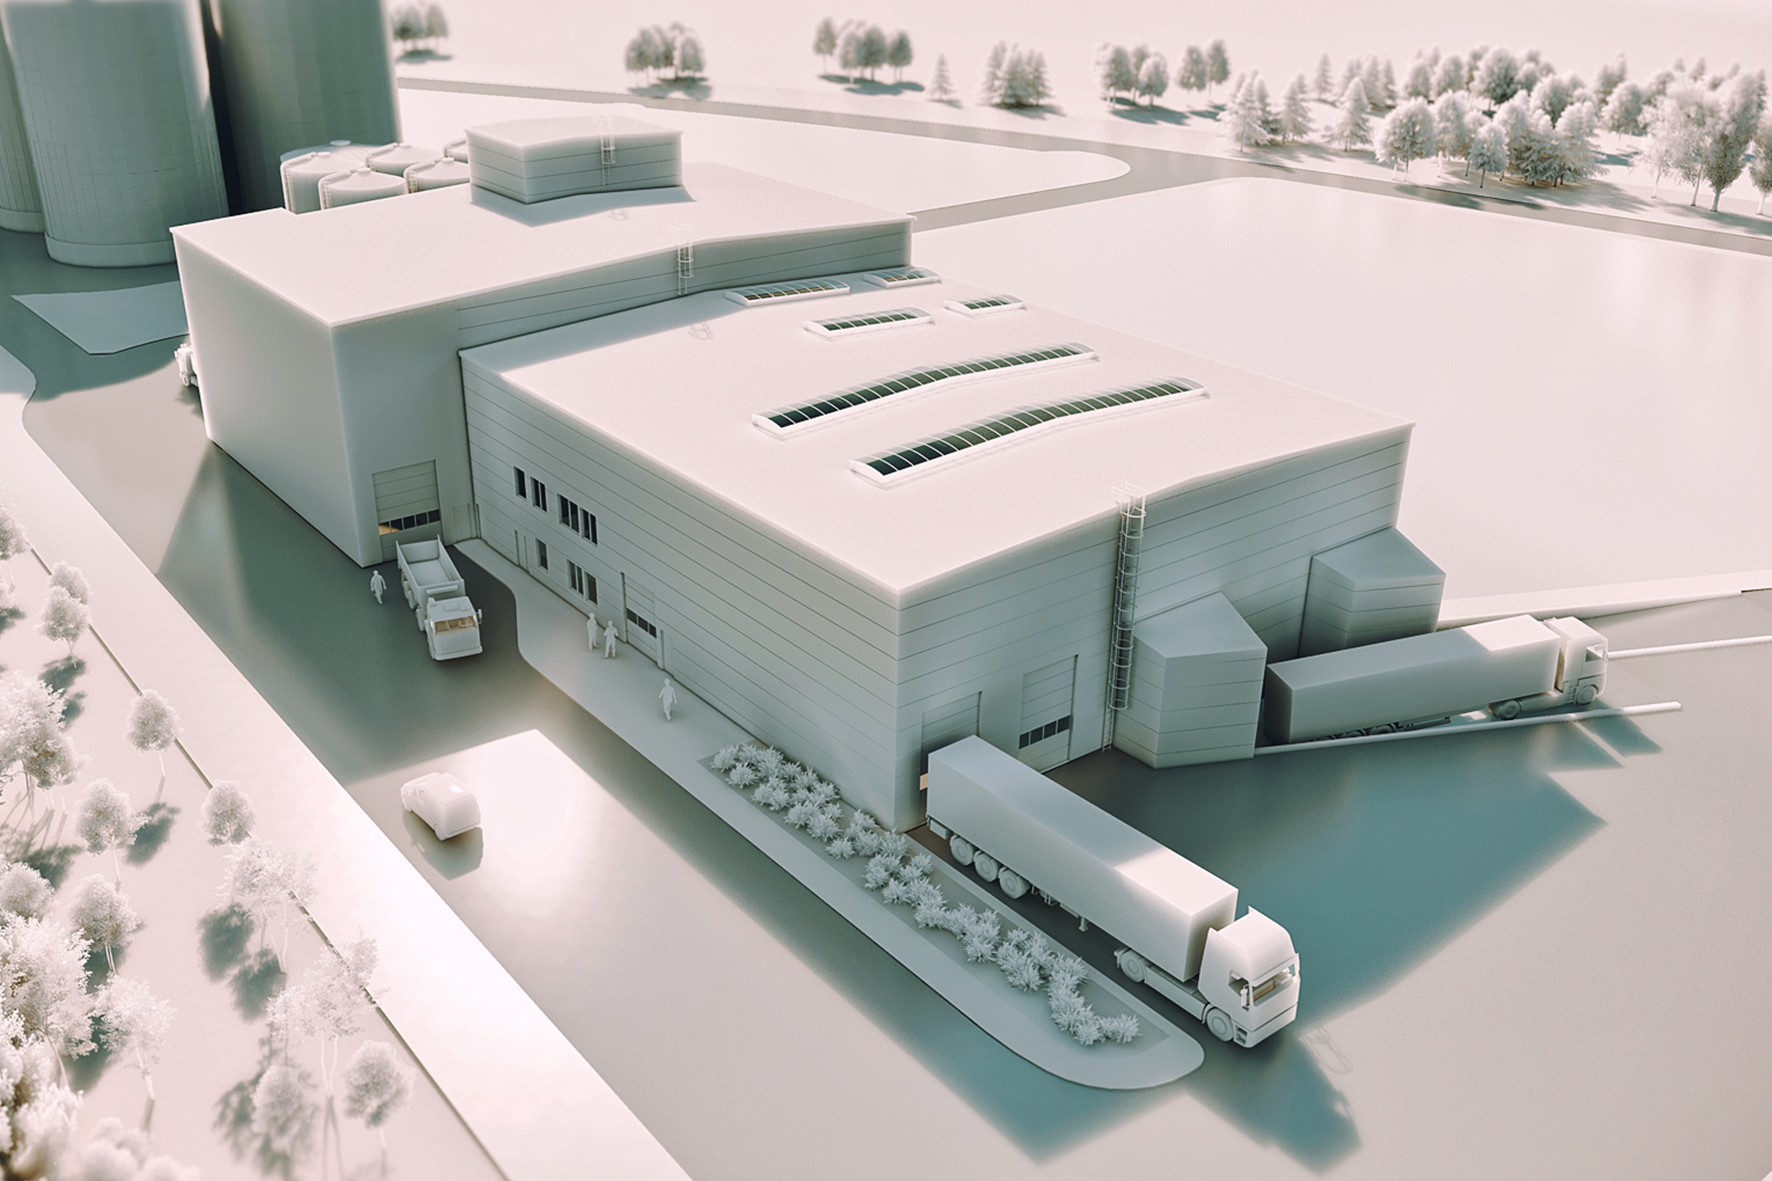 Projekt budowlany hali przemysłowej słodowni w Strzegomiu, wizualizacja, widok z góry